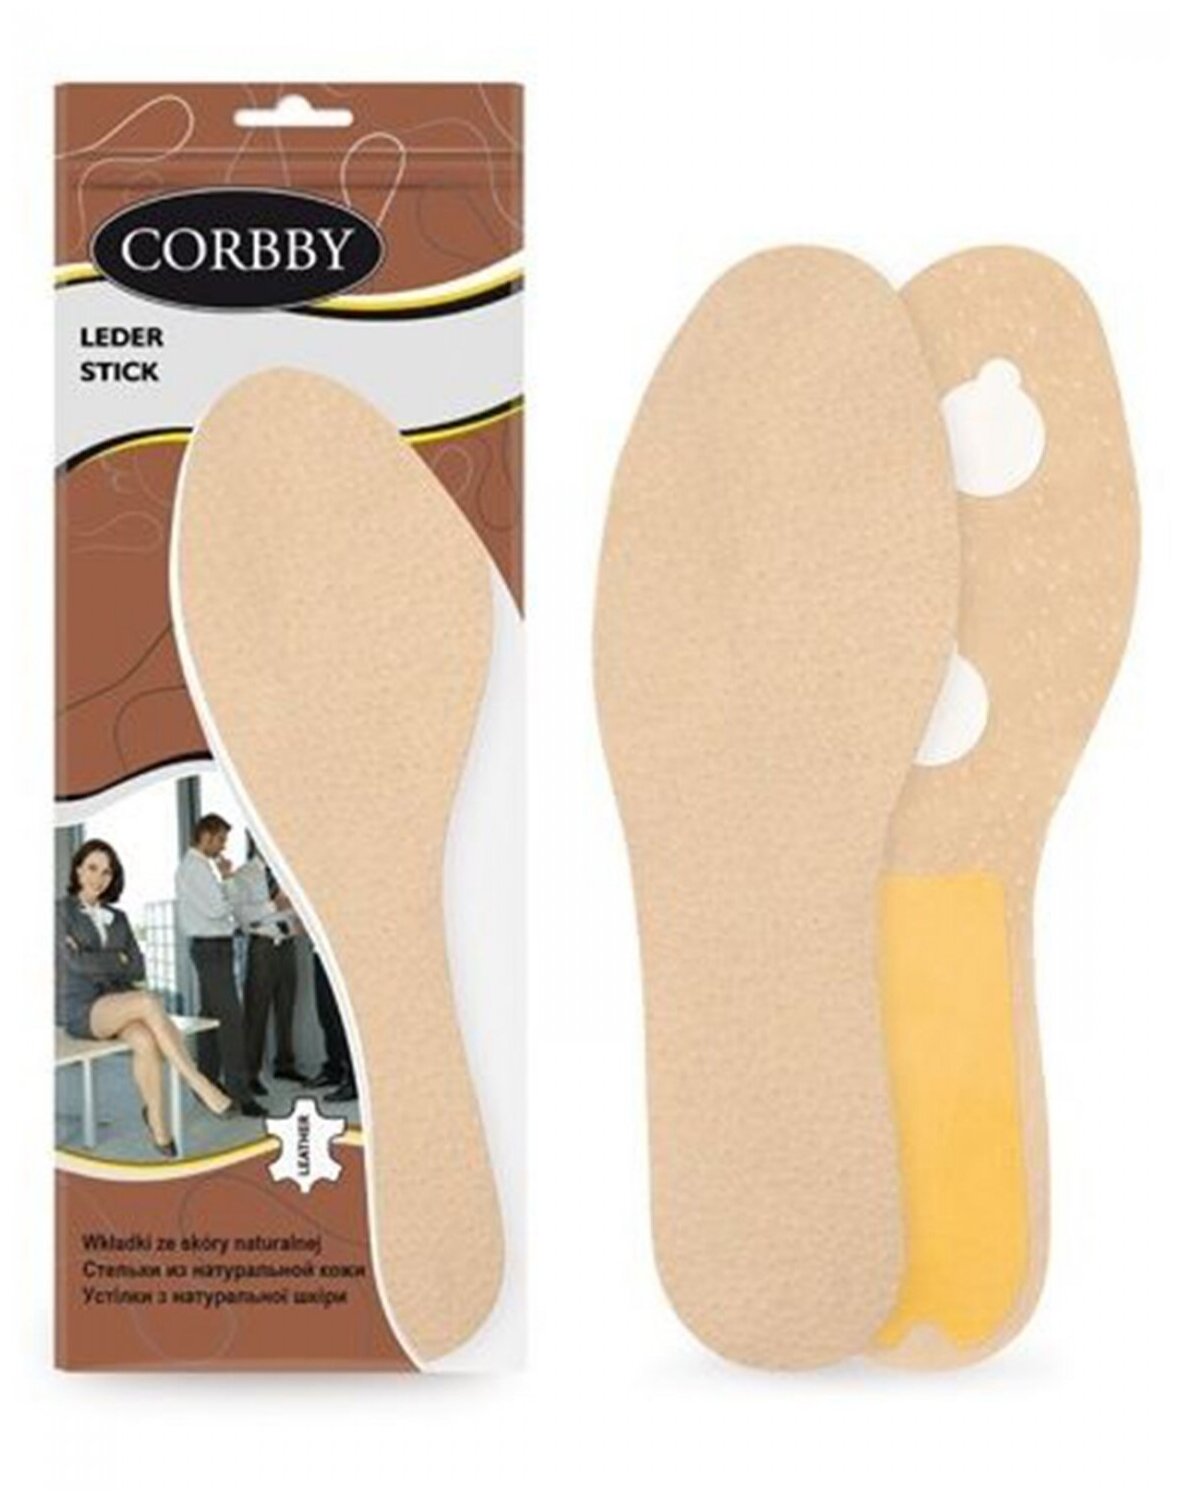 Corbby LEDER STICK Стельки из натуральной кожи и латексной пены. Размер 39/40